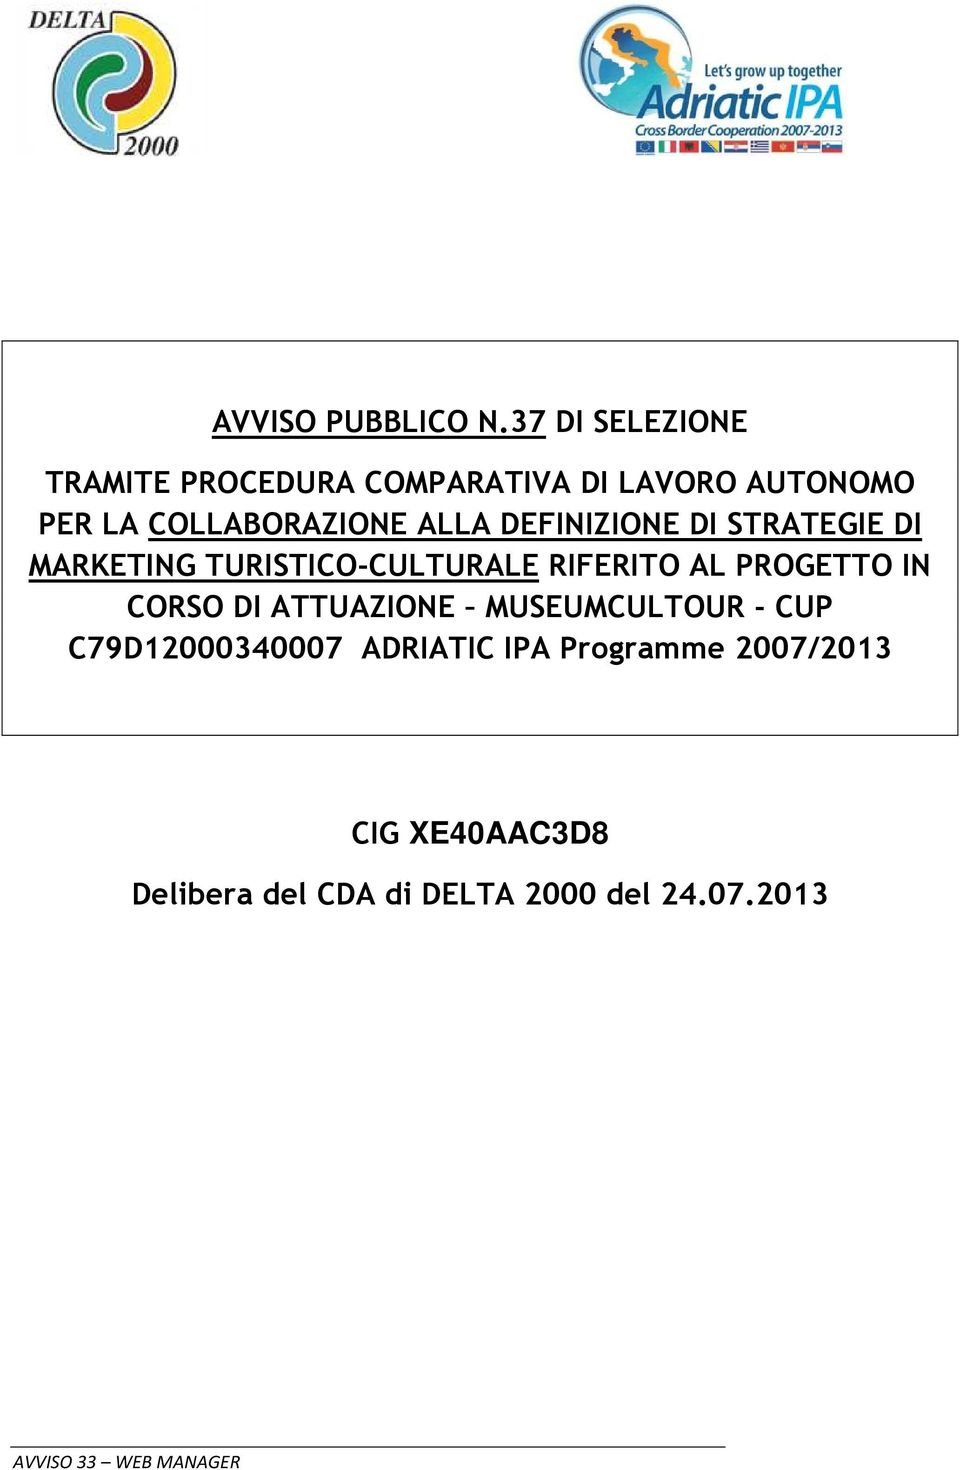 ALLA DEFINIZIONE DI STRATEGIE DI MARKETING TURISTICO-CULTURALE RIFERITO AL PROGETTO IN